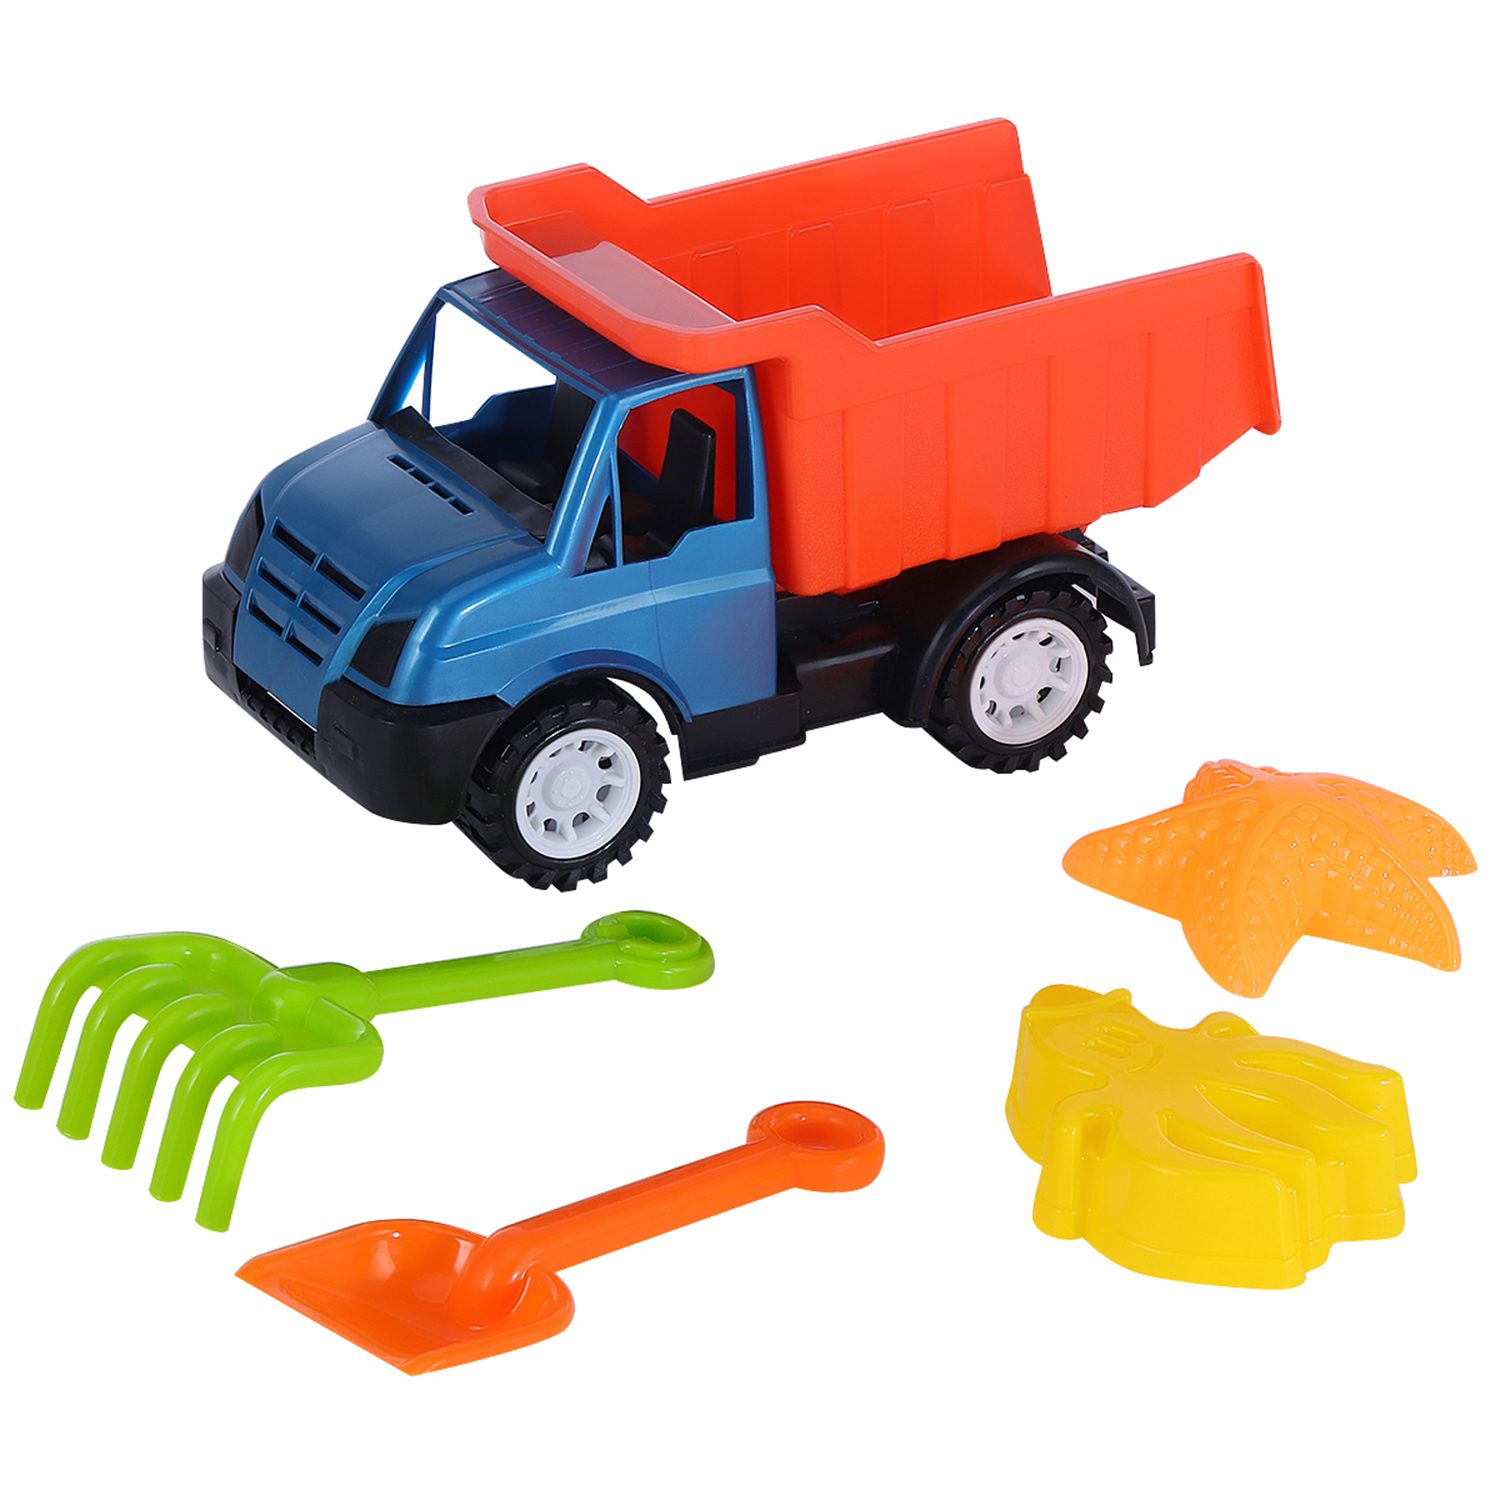 фото Песочный набор компания друзей грузовик, лопатка, грабли, 2 формочки, синий, jb5300478